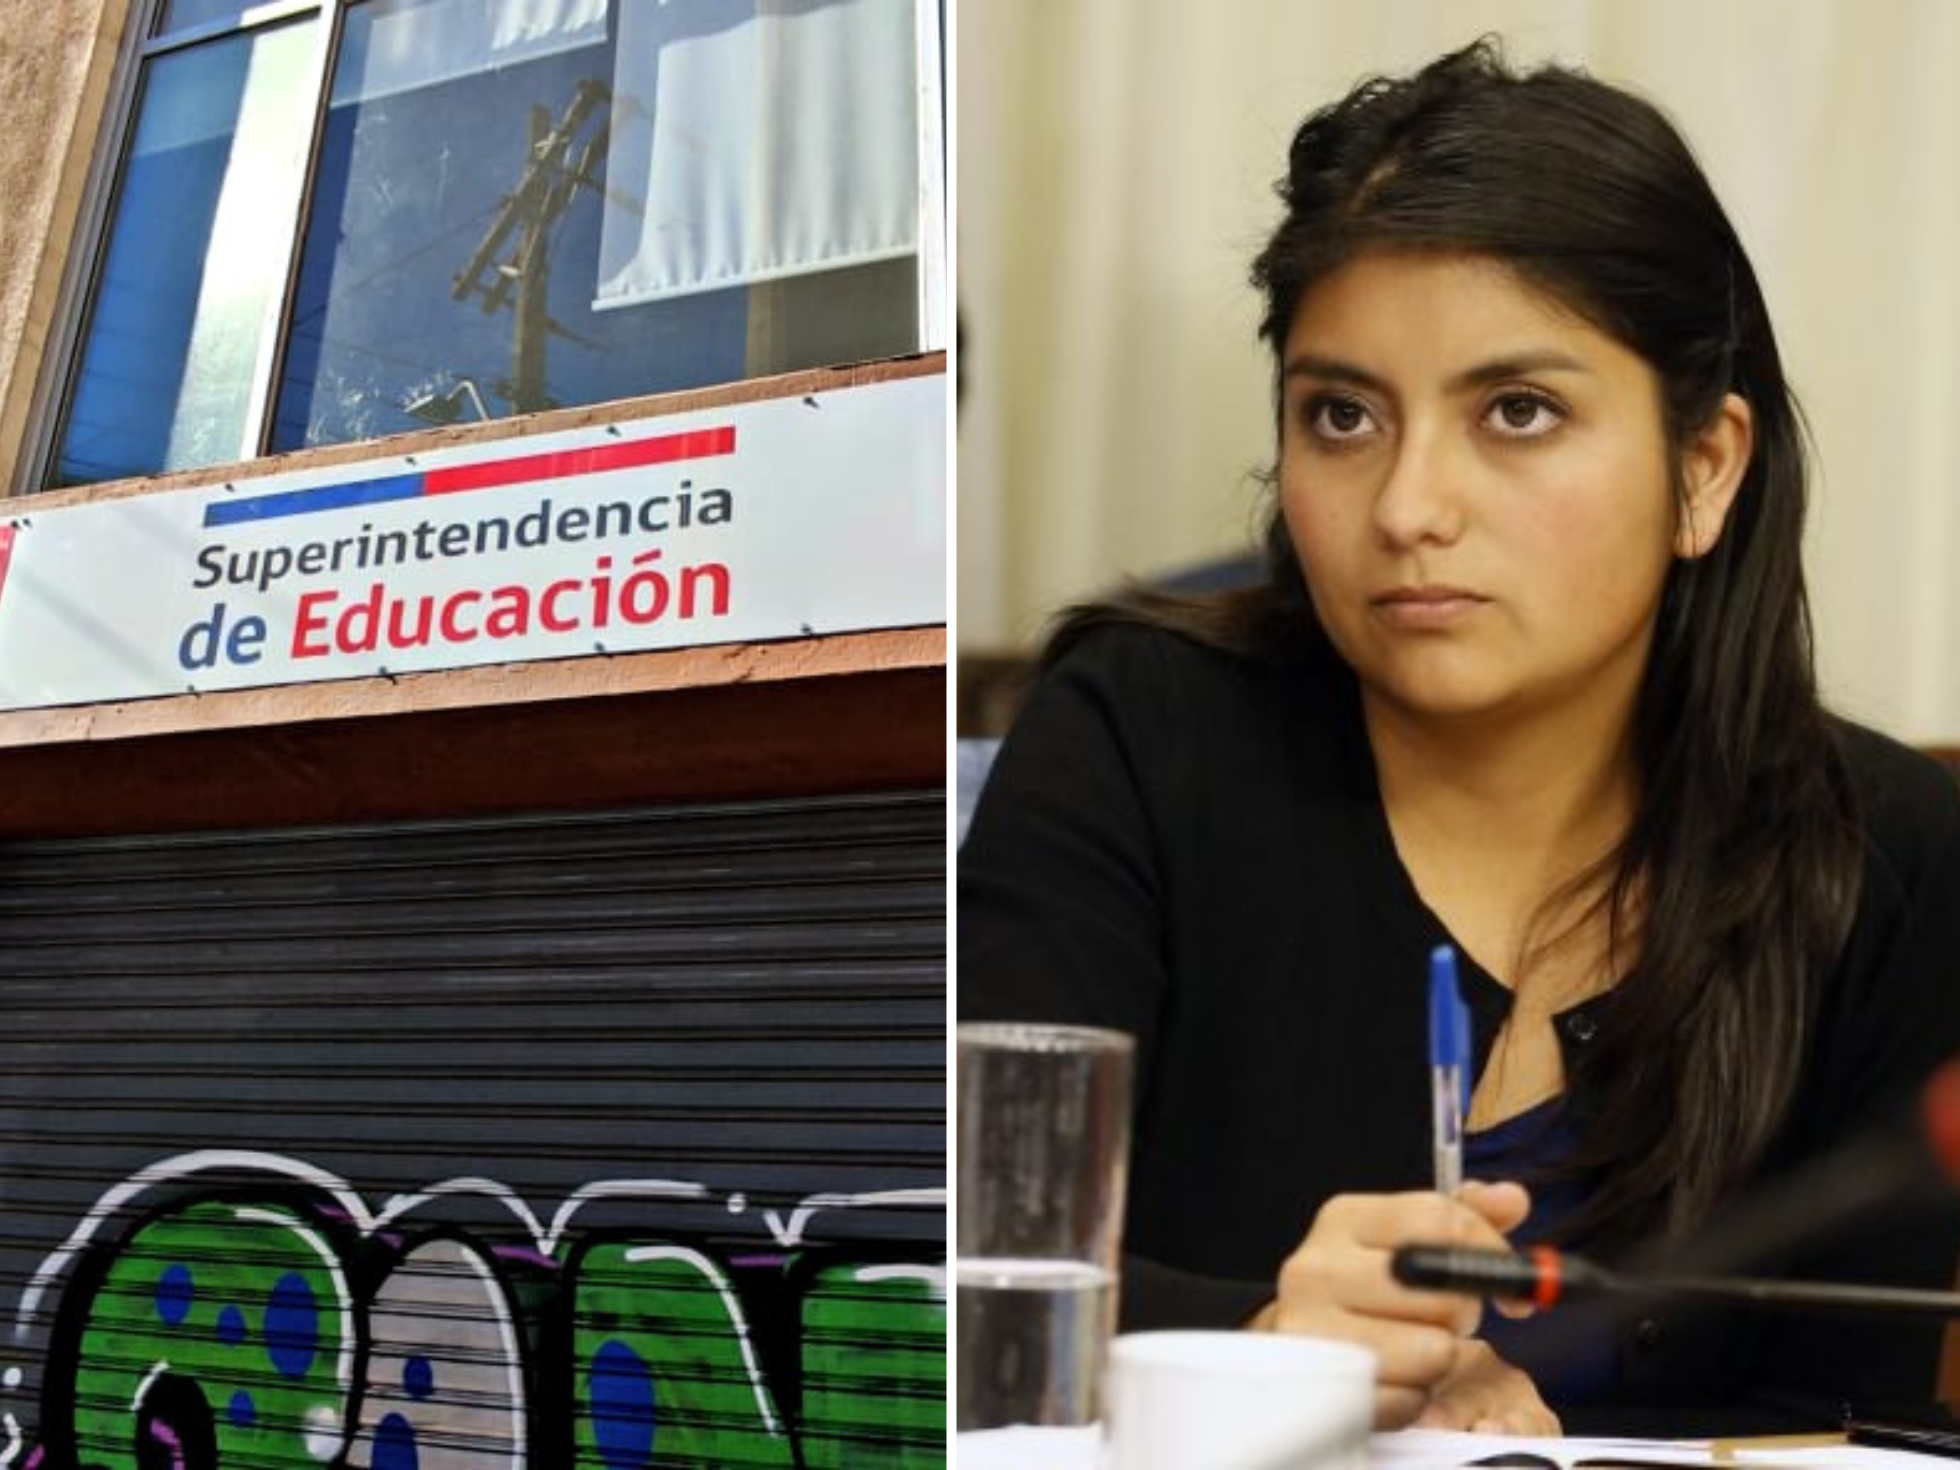 Sueldos multimillonarios en colegios subvencionados: Diputada Camila Rojas llama a la Superintendencia de Educación a cumplir con su deber